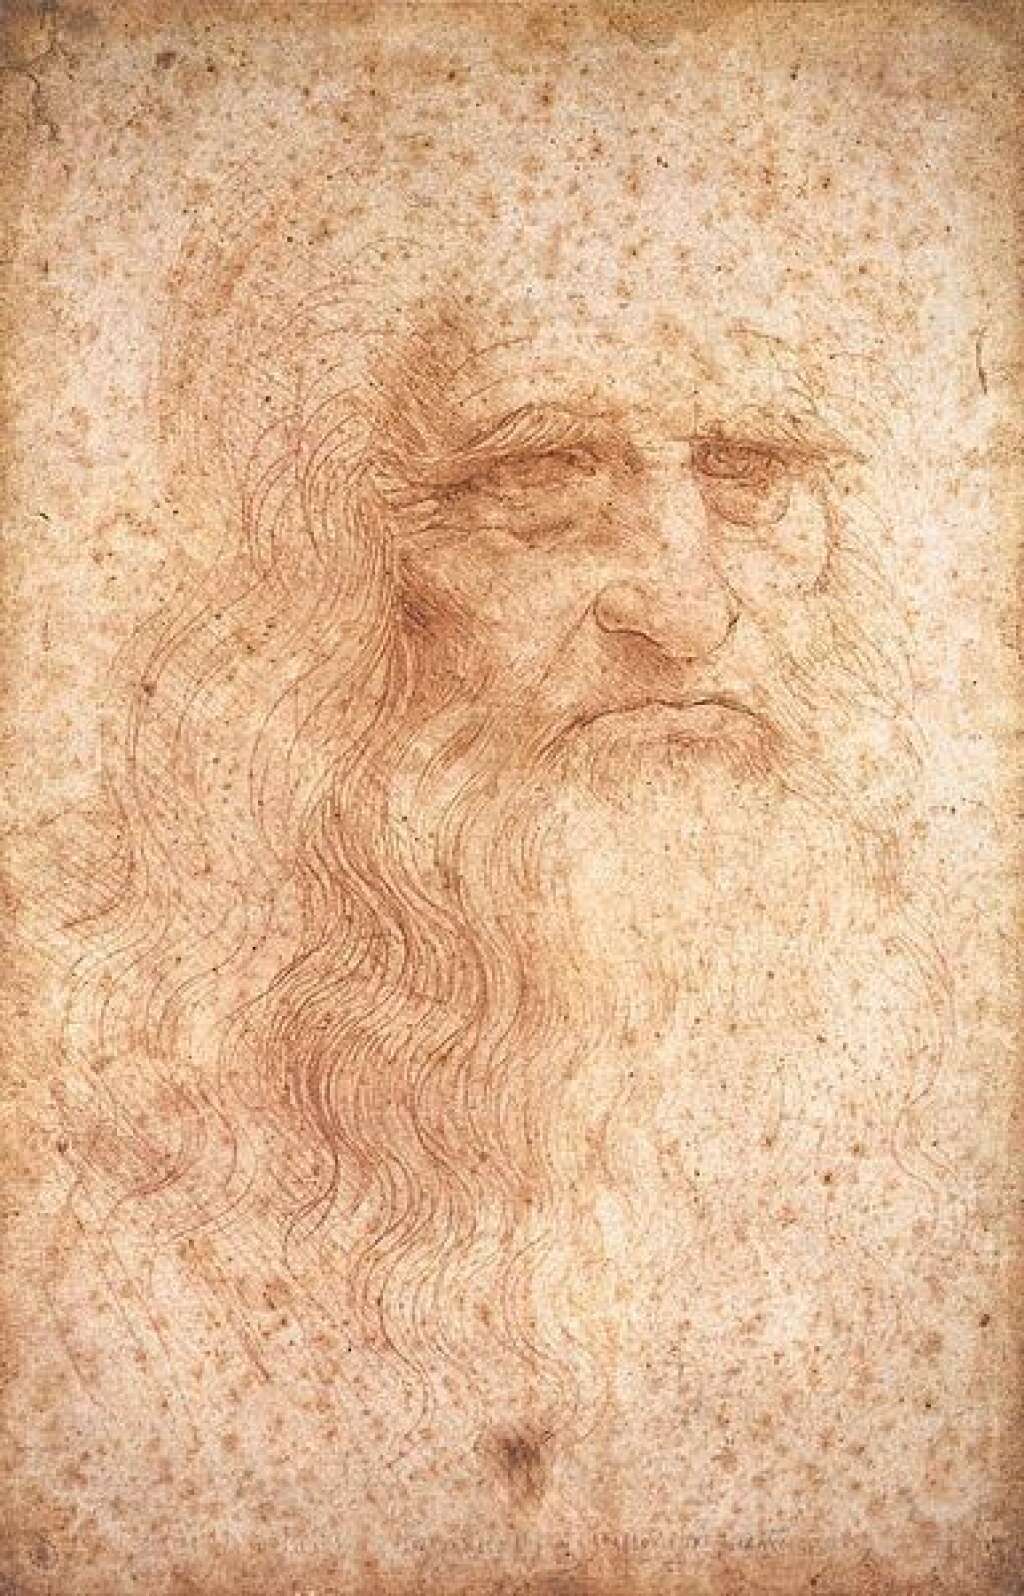 Léonard De Vinci (1452-1519) - La controverse continue, mais aujourd'hui, la plupart des scientifiques s'accordent pour dire que Léonard de Vinci était bisexuel. A 24 ans, il a même été accusé de "sodomie active" envers un jeune homme de 17 ans. Il était par ailleurs entouré de jeunes garçons, dont l'un d'eux, Salaï, serait "la muse du visage et du sourire de La Joconde" <a href="http://gayscelebres.hautetfort.com/archive/2010/07/21/les-deux-amours-de-leonard.html">selon l'historien Michel Larivière</a>.